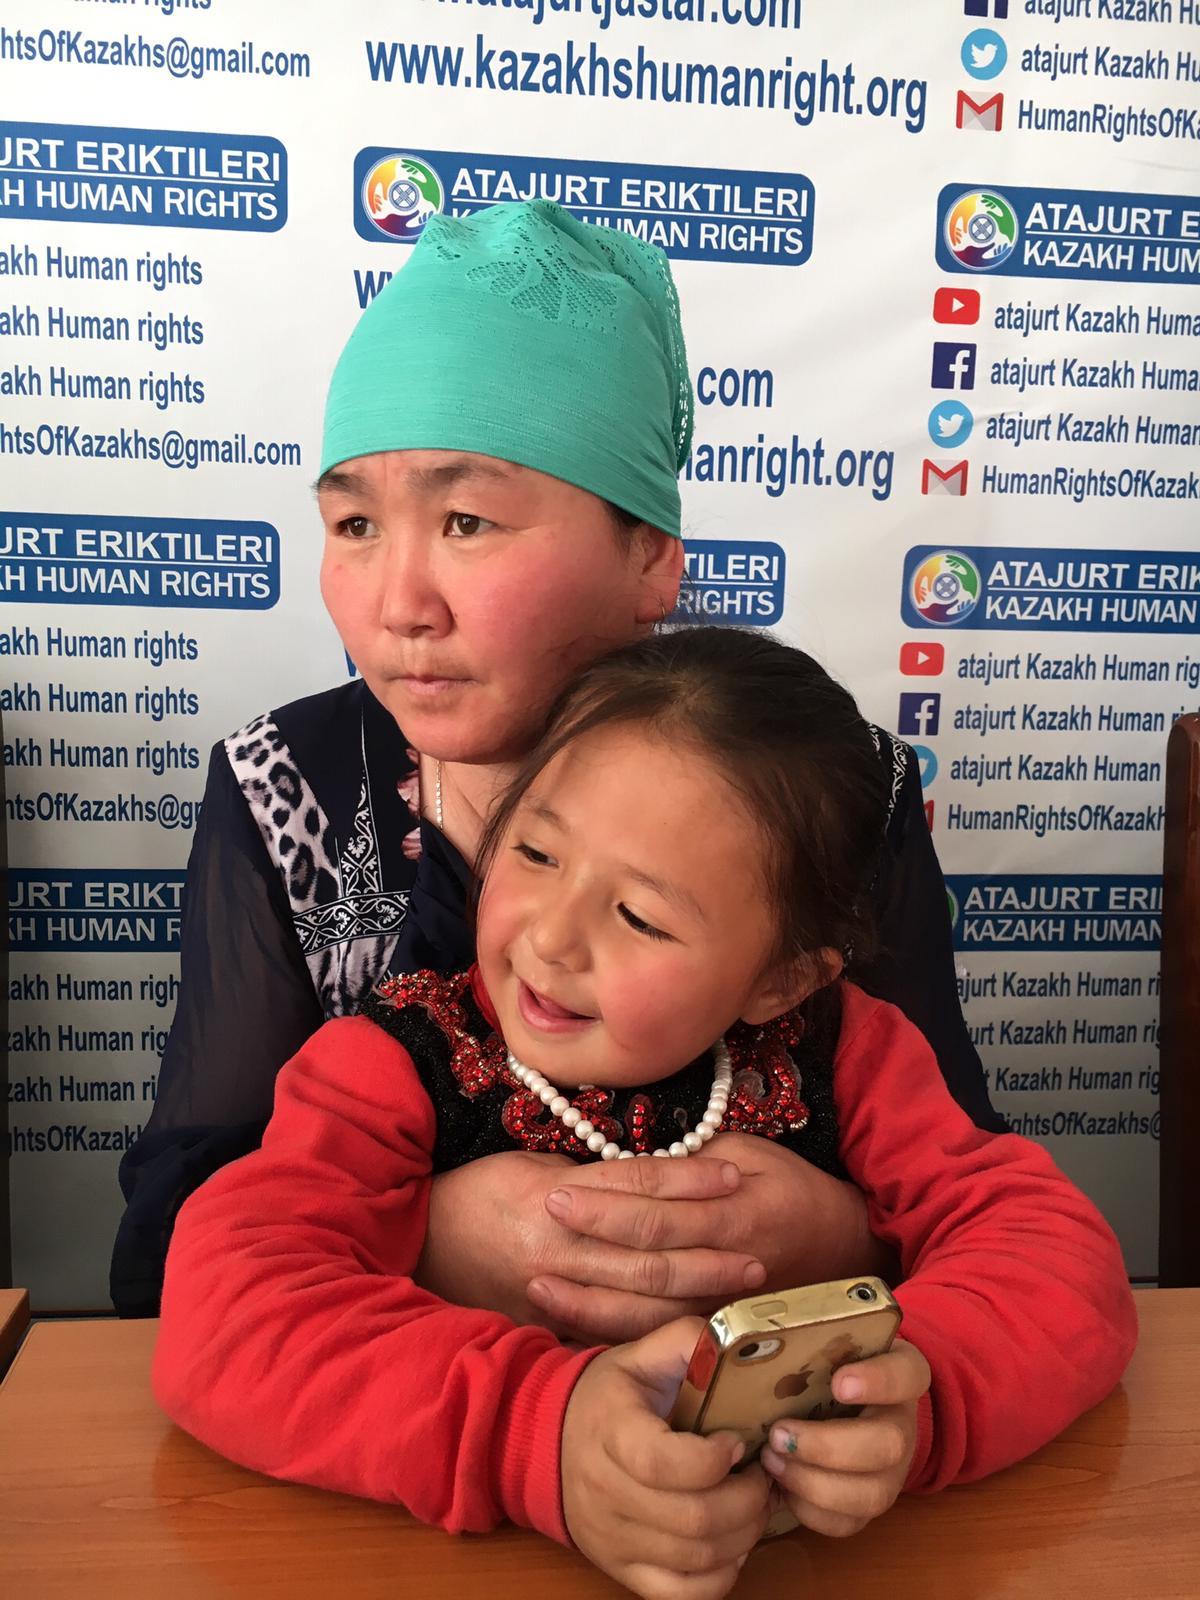 Gulzira Tursinjan, chinoise détenue 15 mois dans des camps au Xinjiang, avec sa fille de 4 ans dans les bras. [RTS - Michael Peuker]